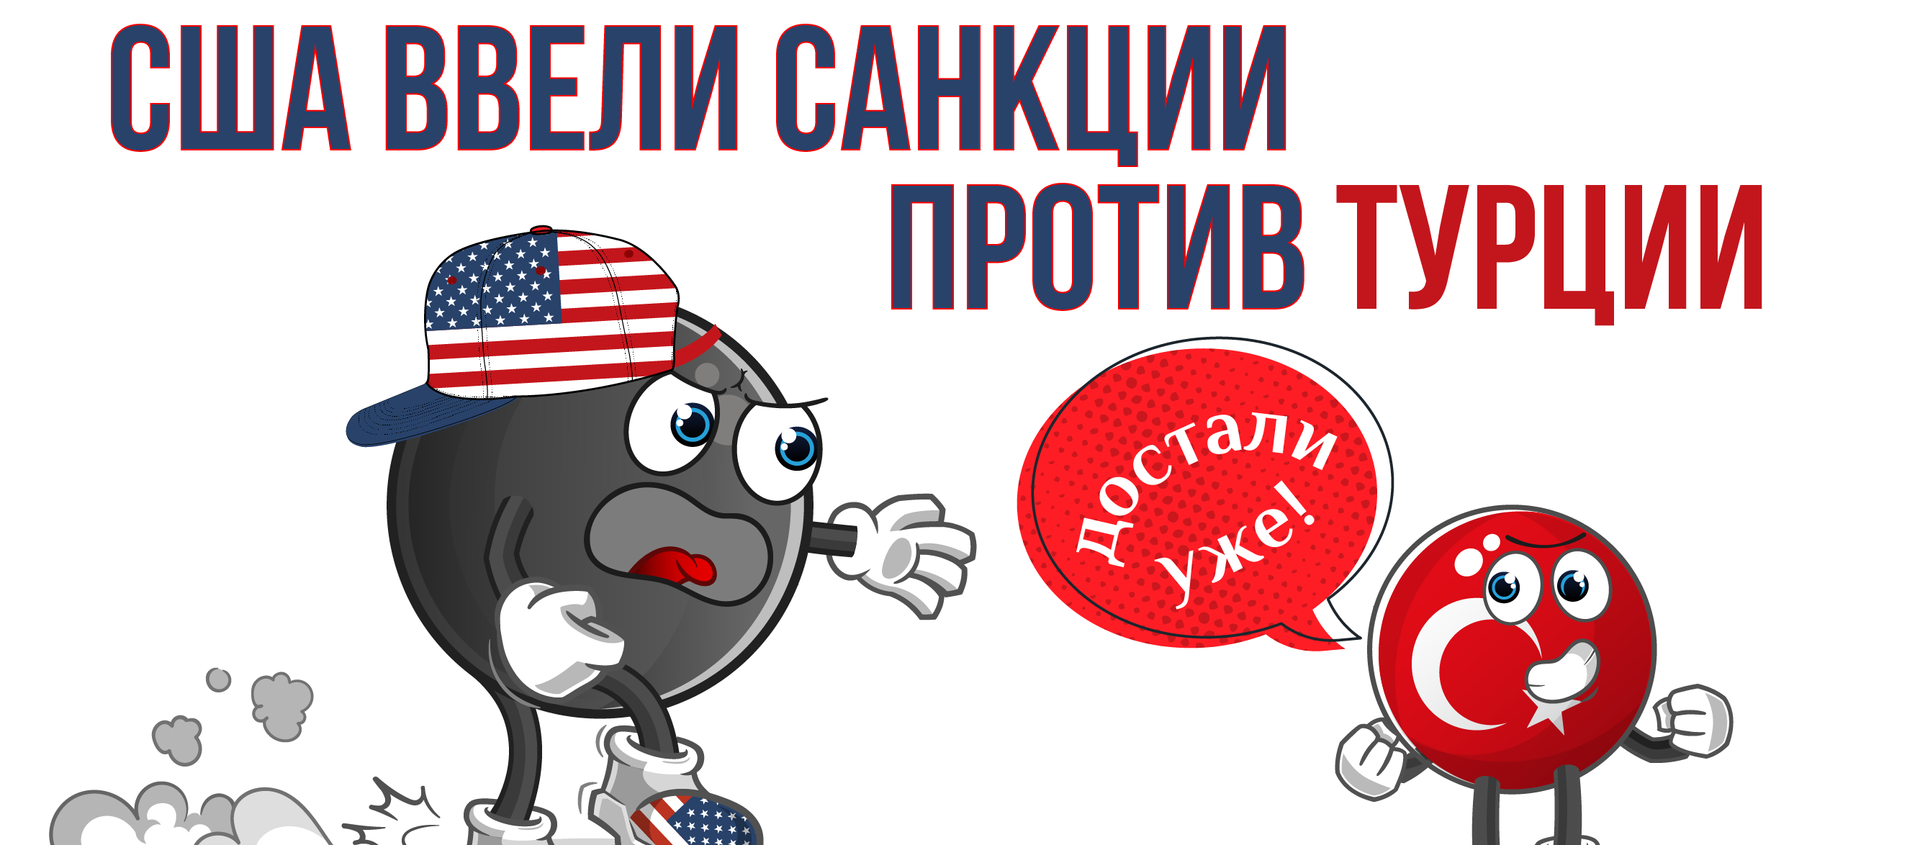 США вводят санкции против Турции за покупку С-400 у России - Sputnik Латвия, 1920, 16.12.2020